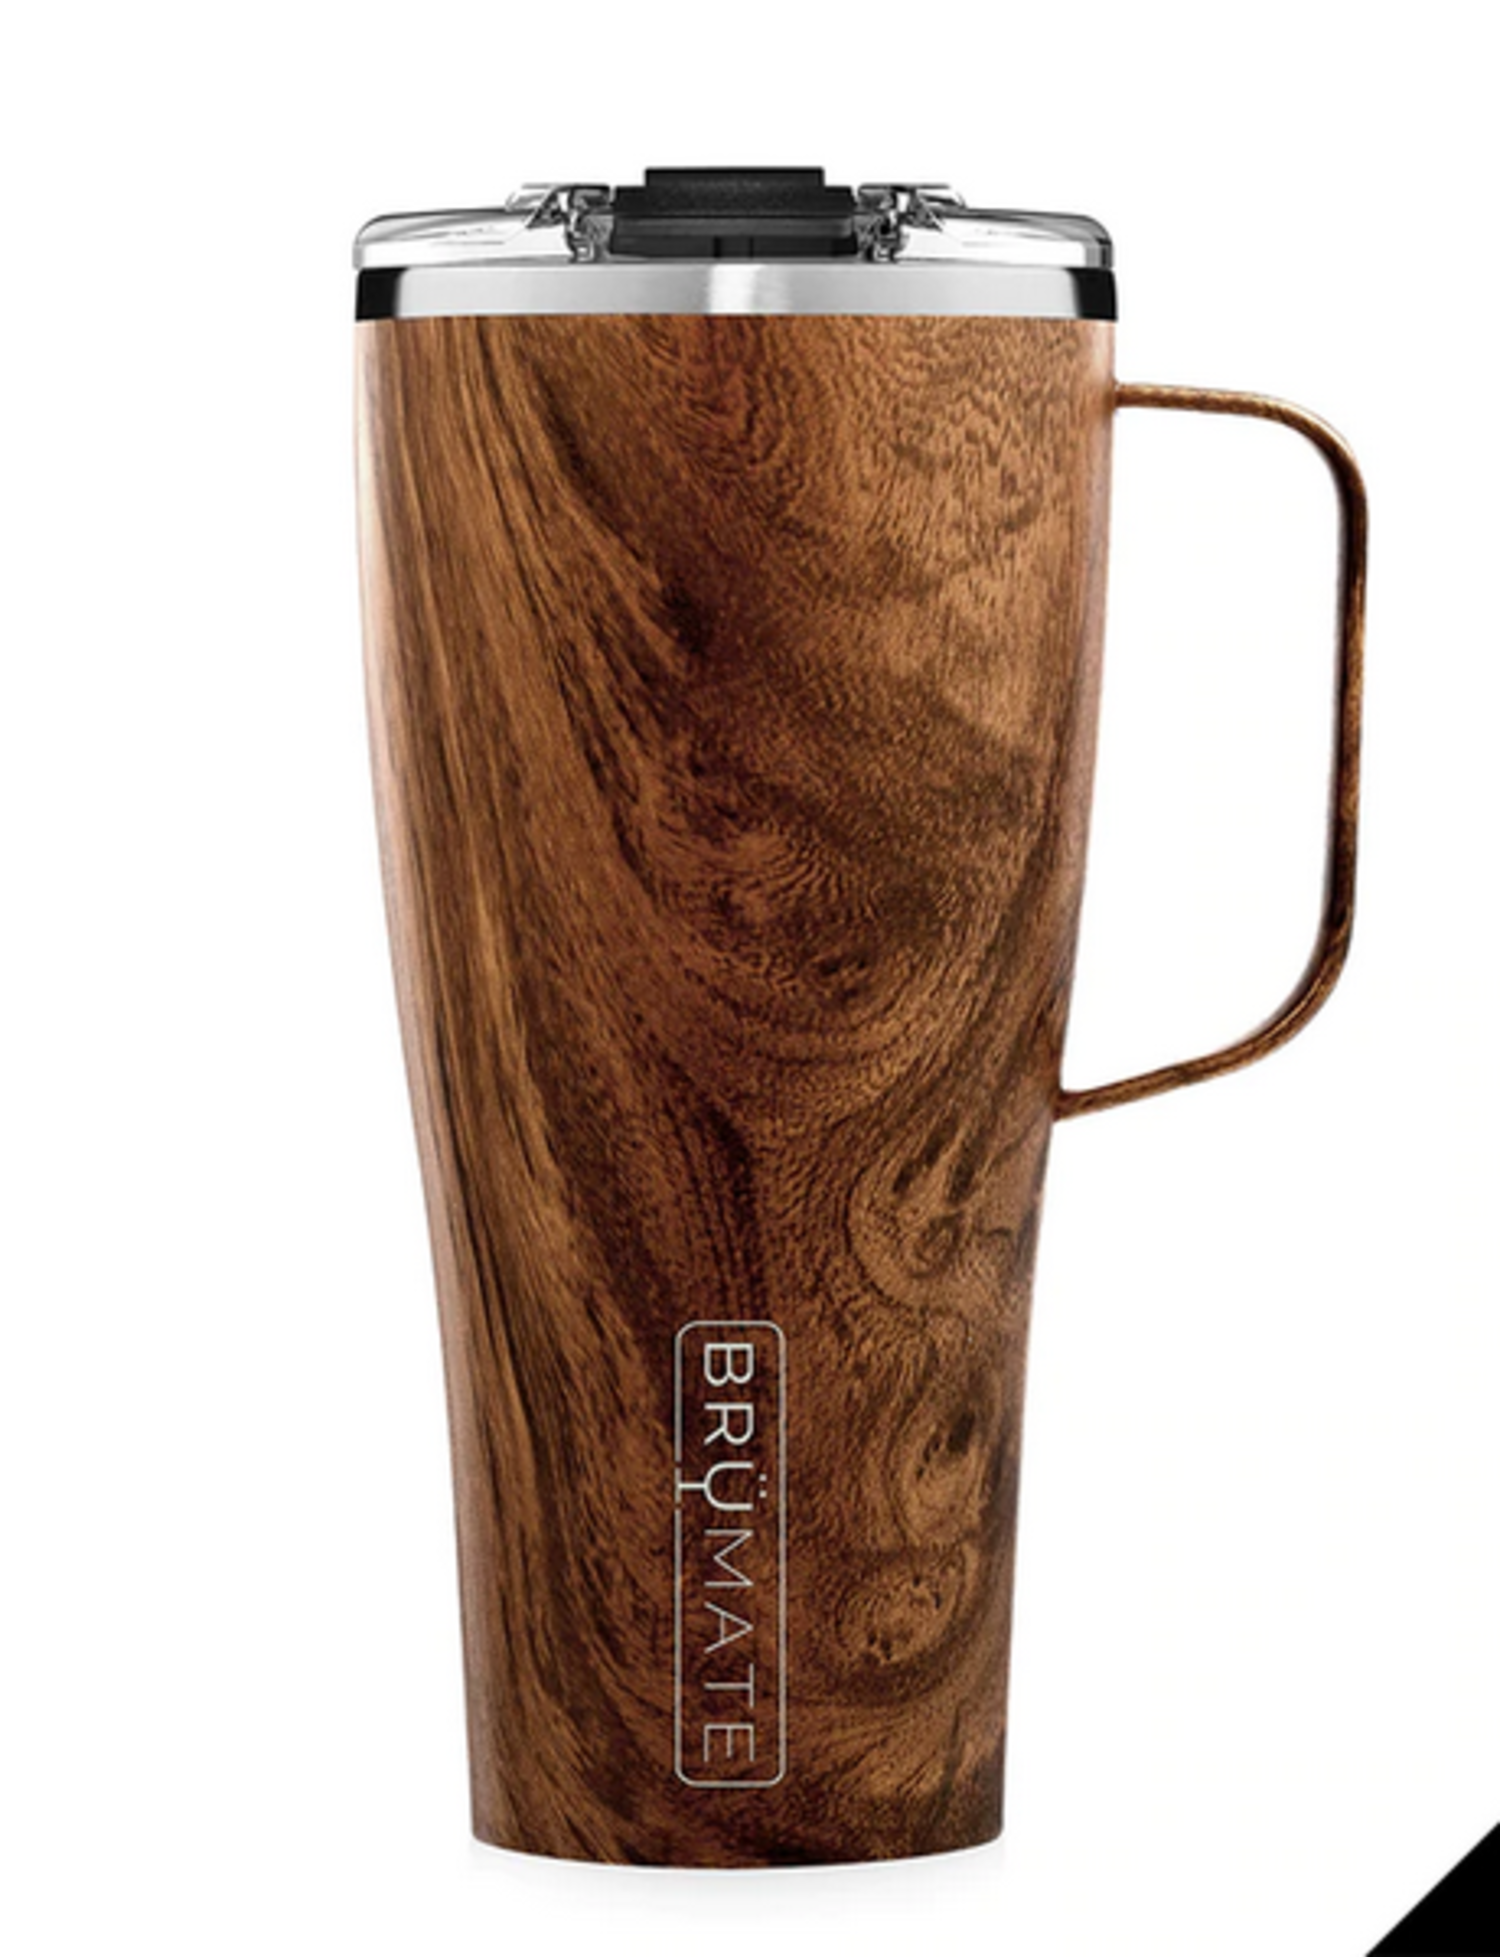 Brumate Toddy XL 32oz Coffee Mug